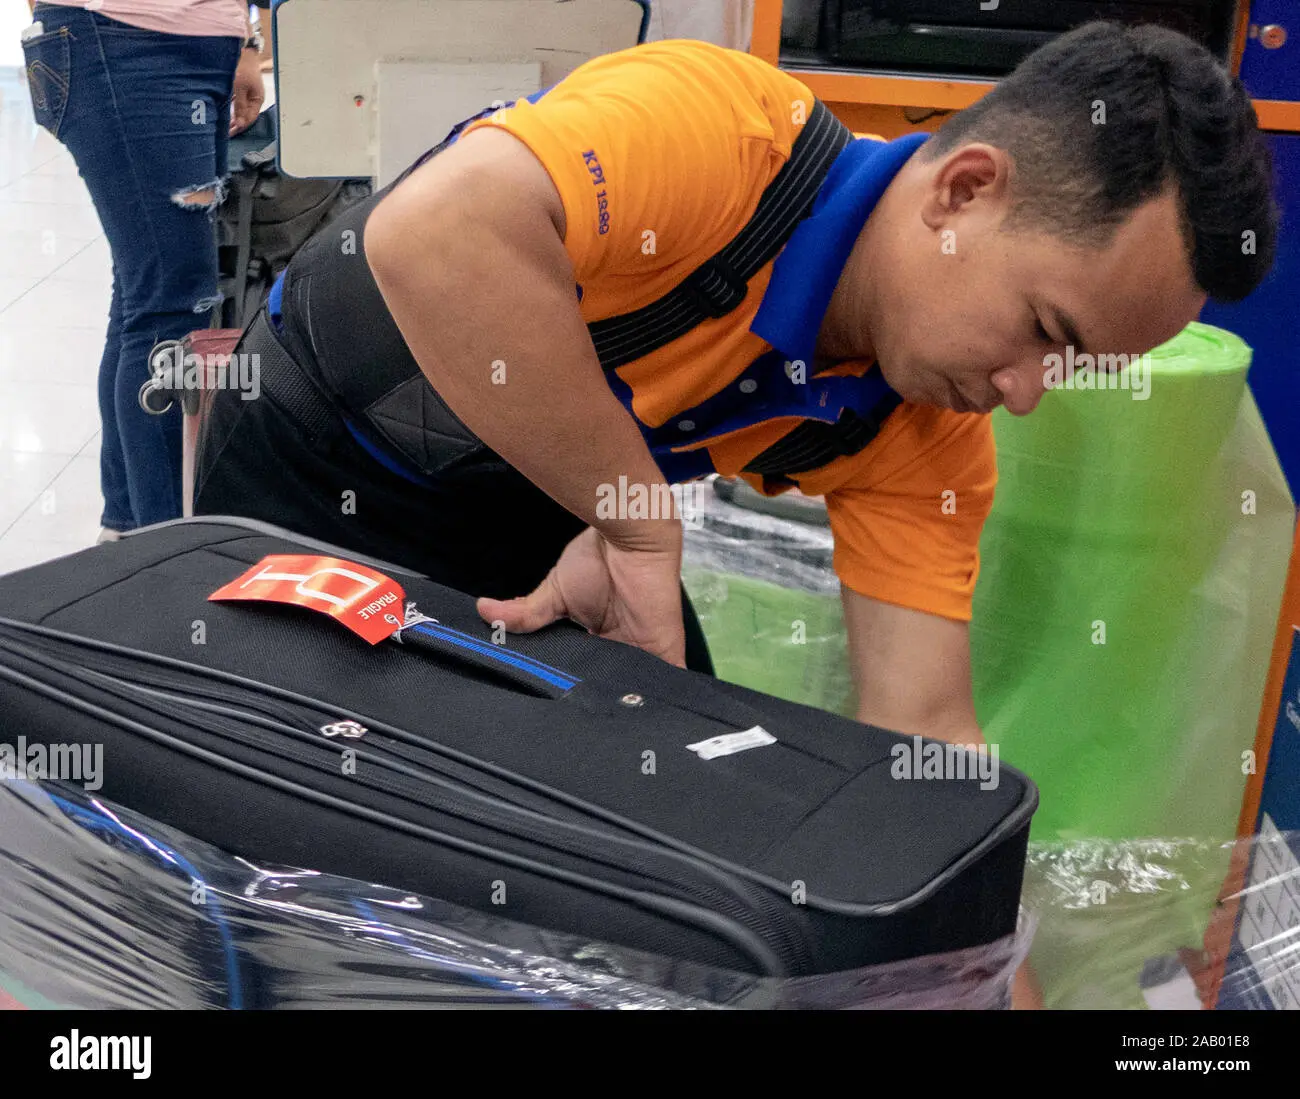 aeropuerto tailandia embalaje plastico - Por qué embalar maleta